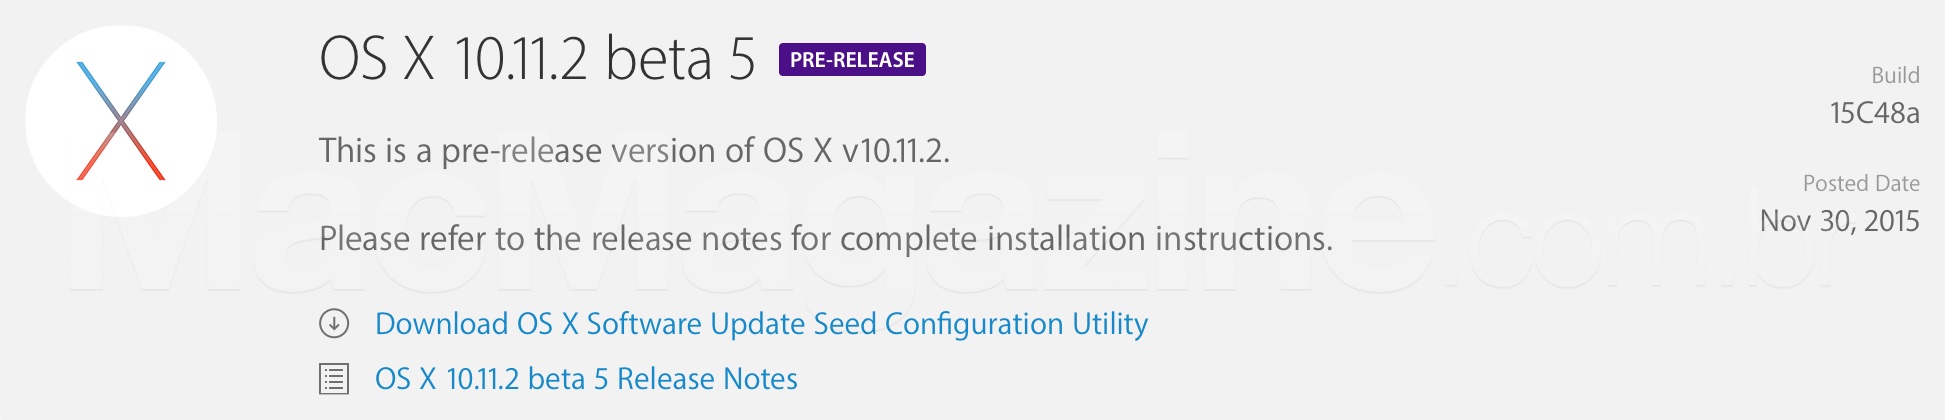 OS X 10.11.2 beta 5